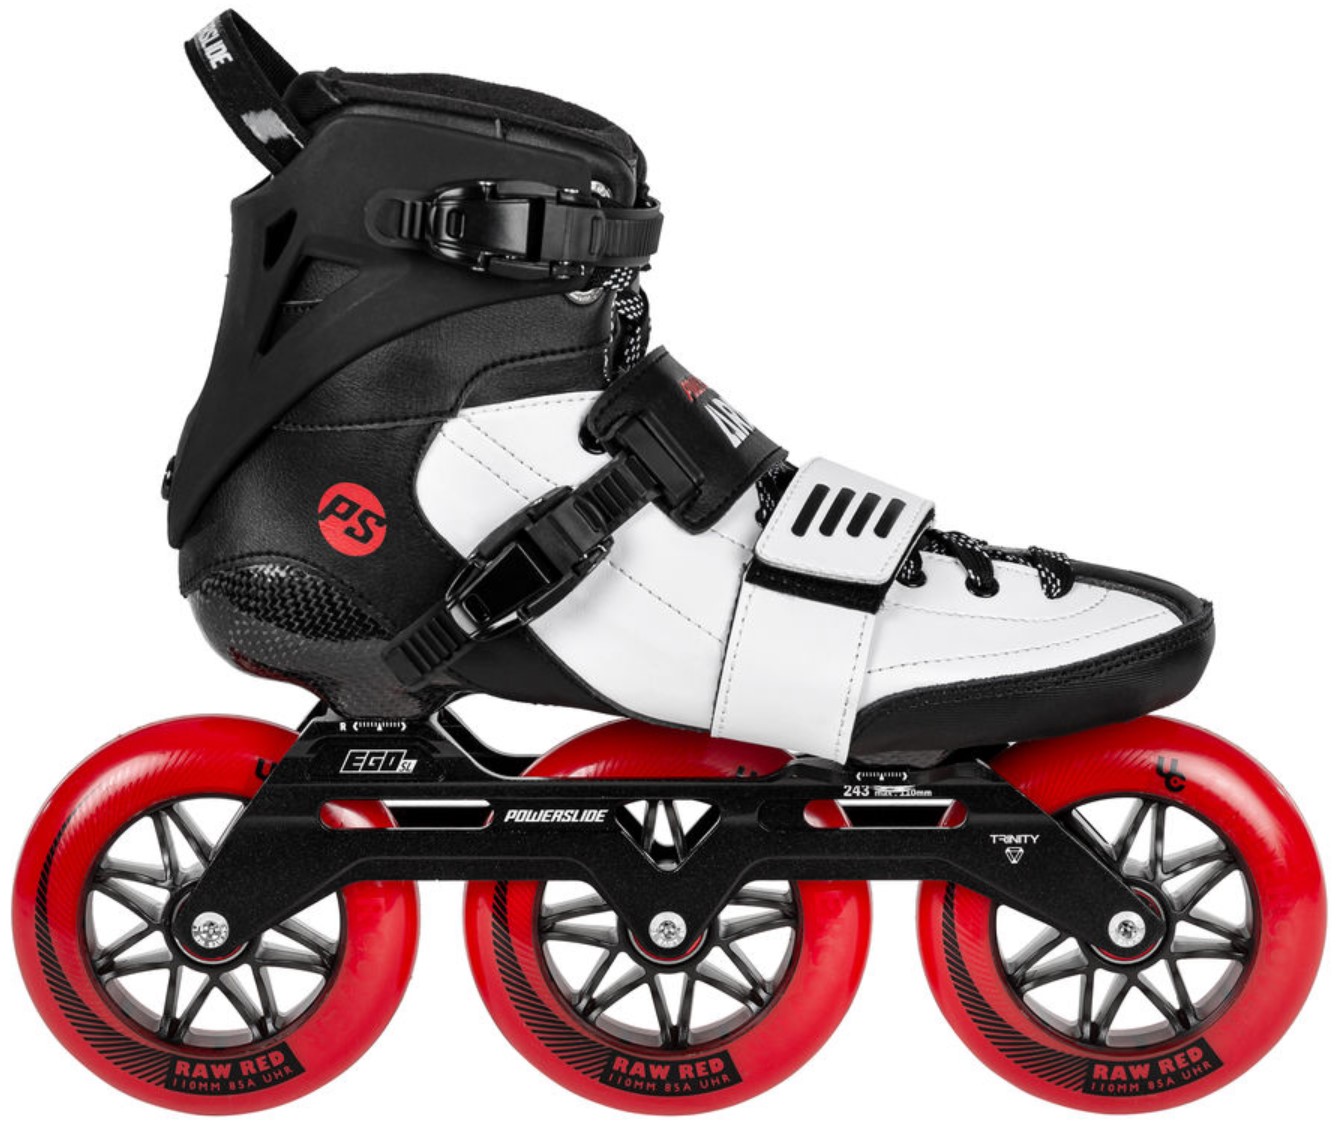 Powerslide Speed Slalom Arise SL inline skate with red 110 diameter wheels